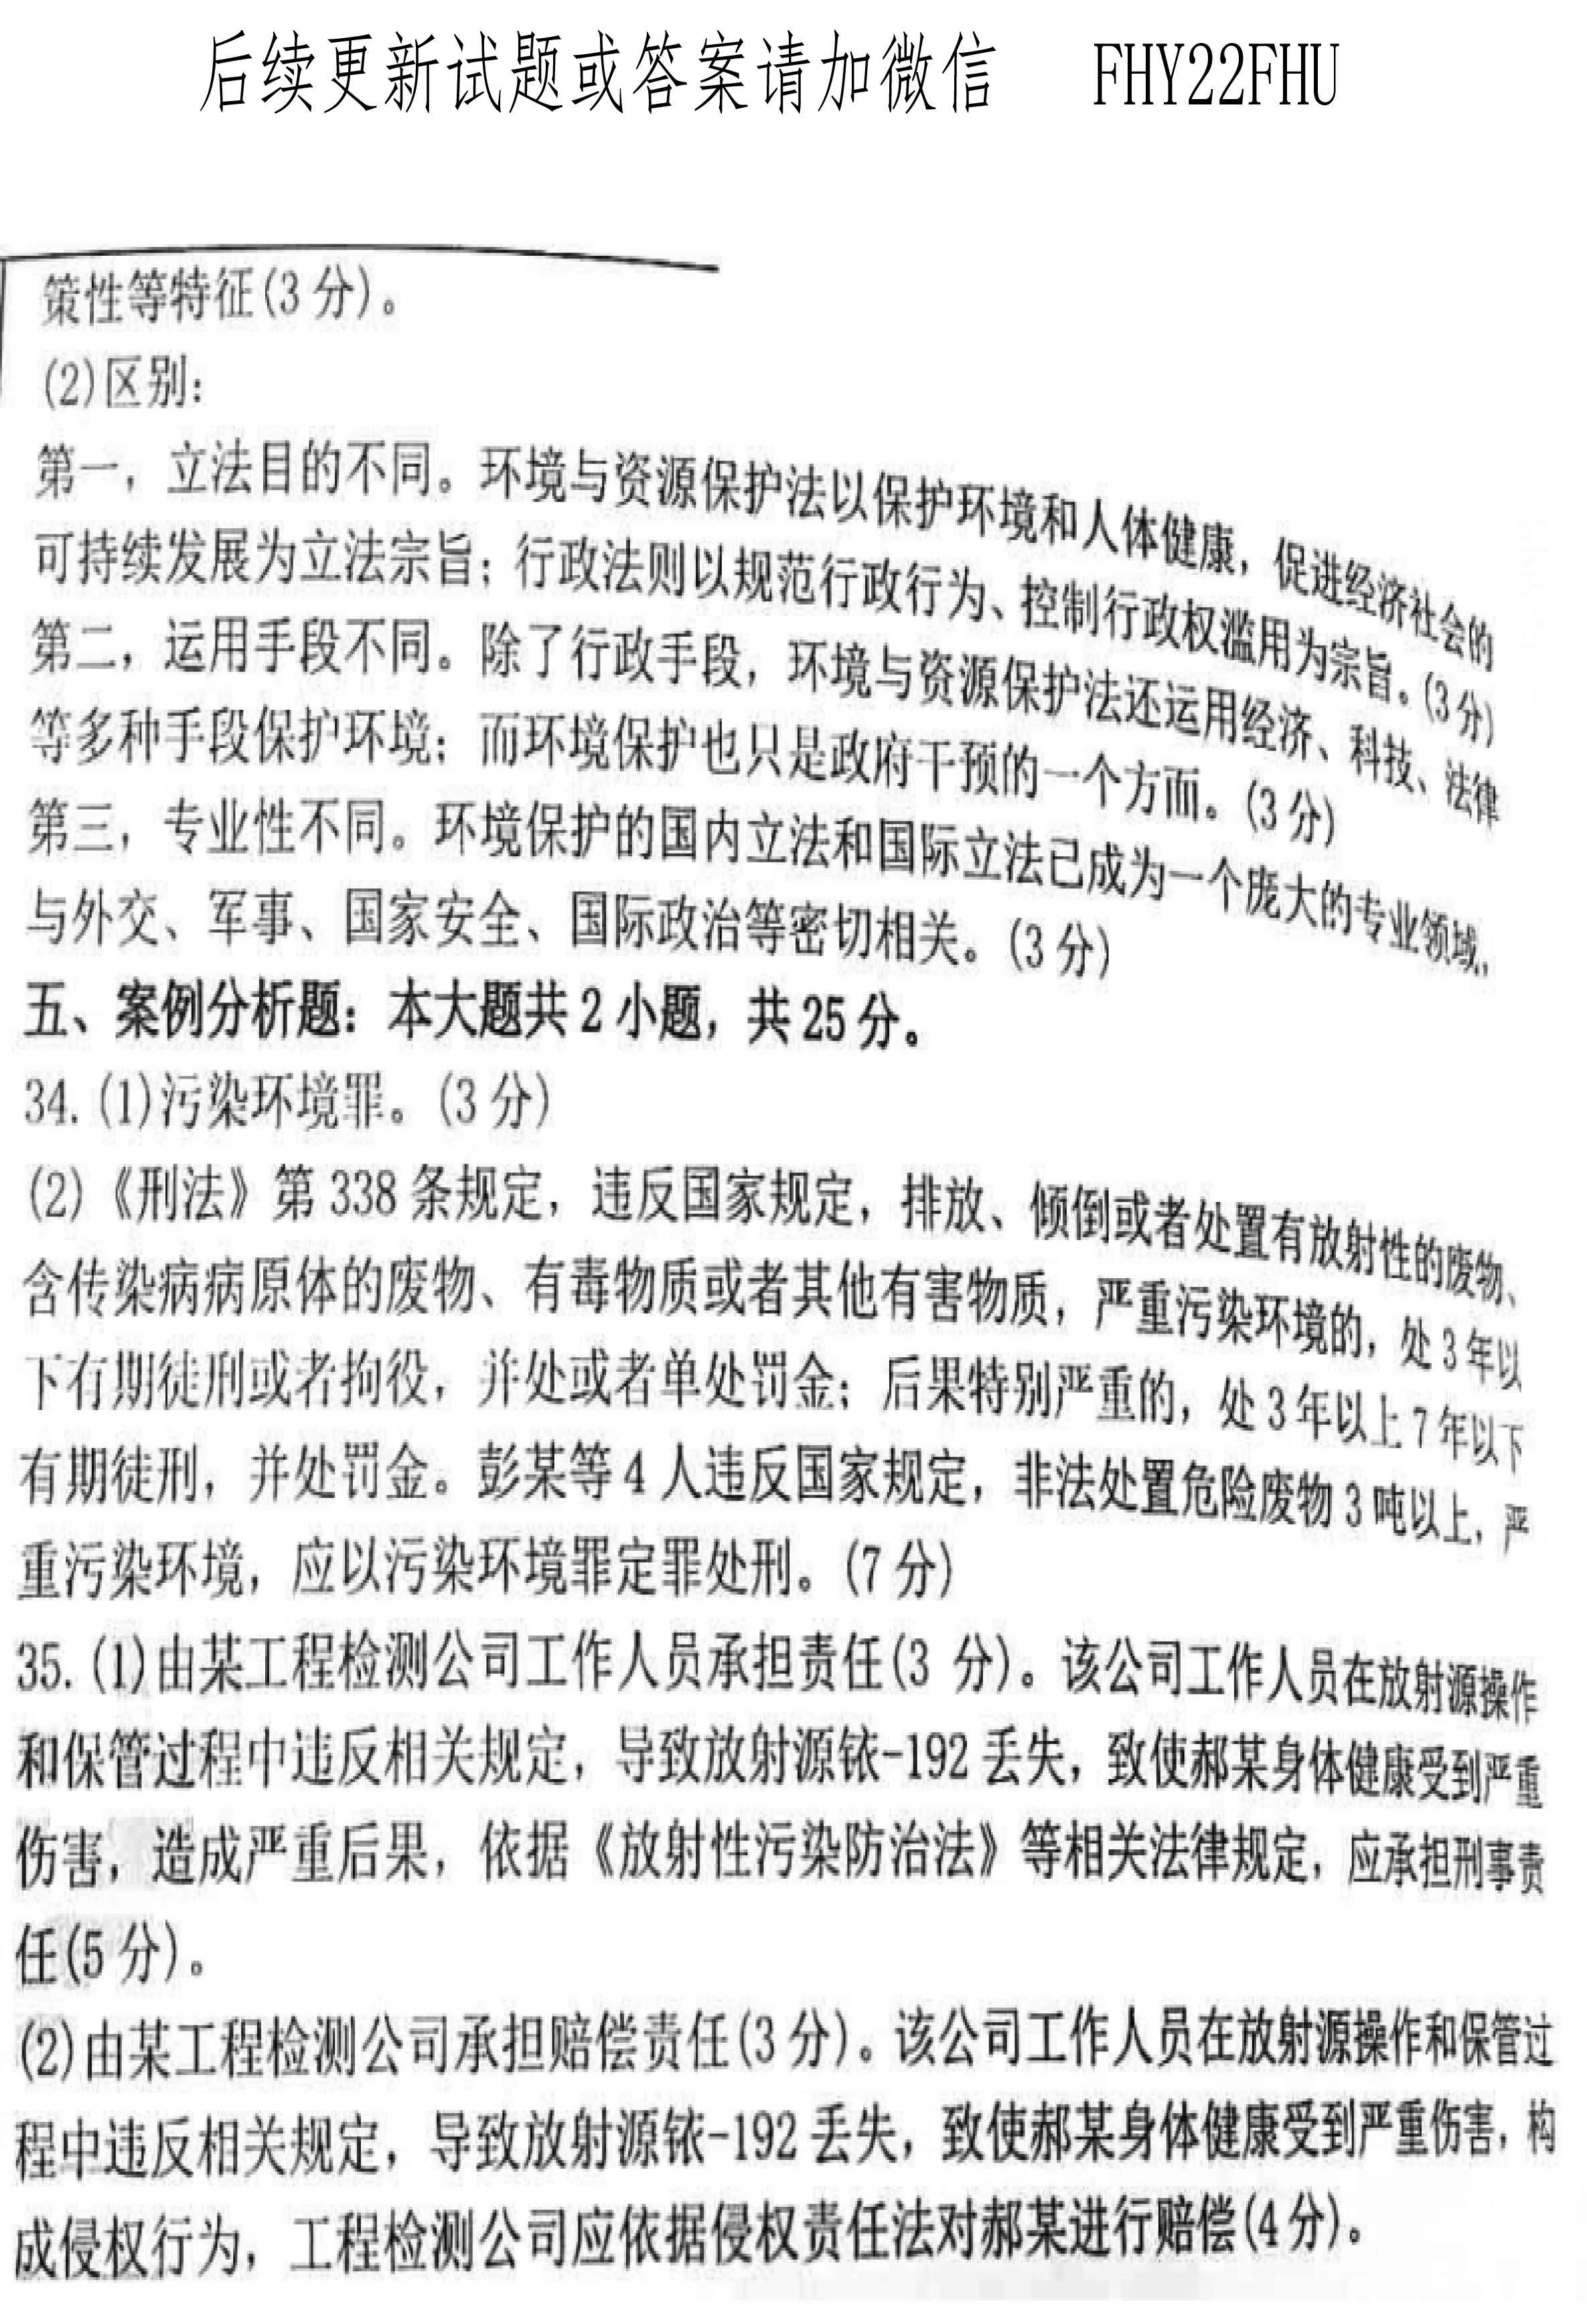 贵州省2020年0月8自学考试环境与资源保护法学00228真题及答案